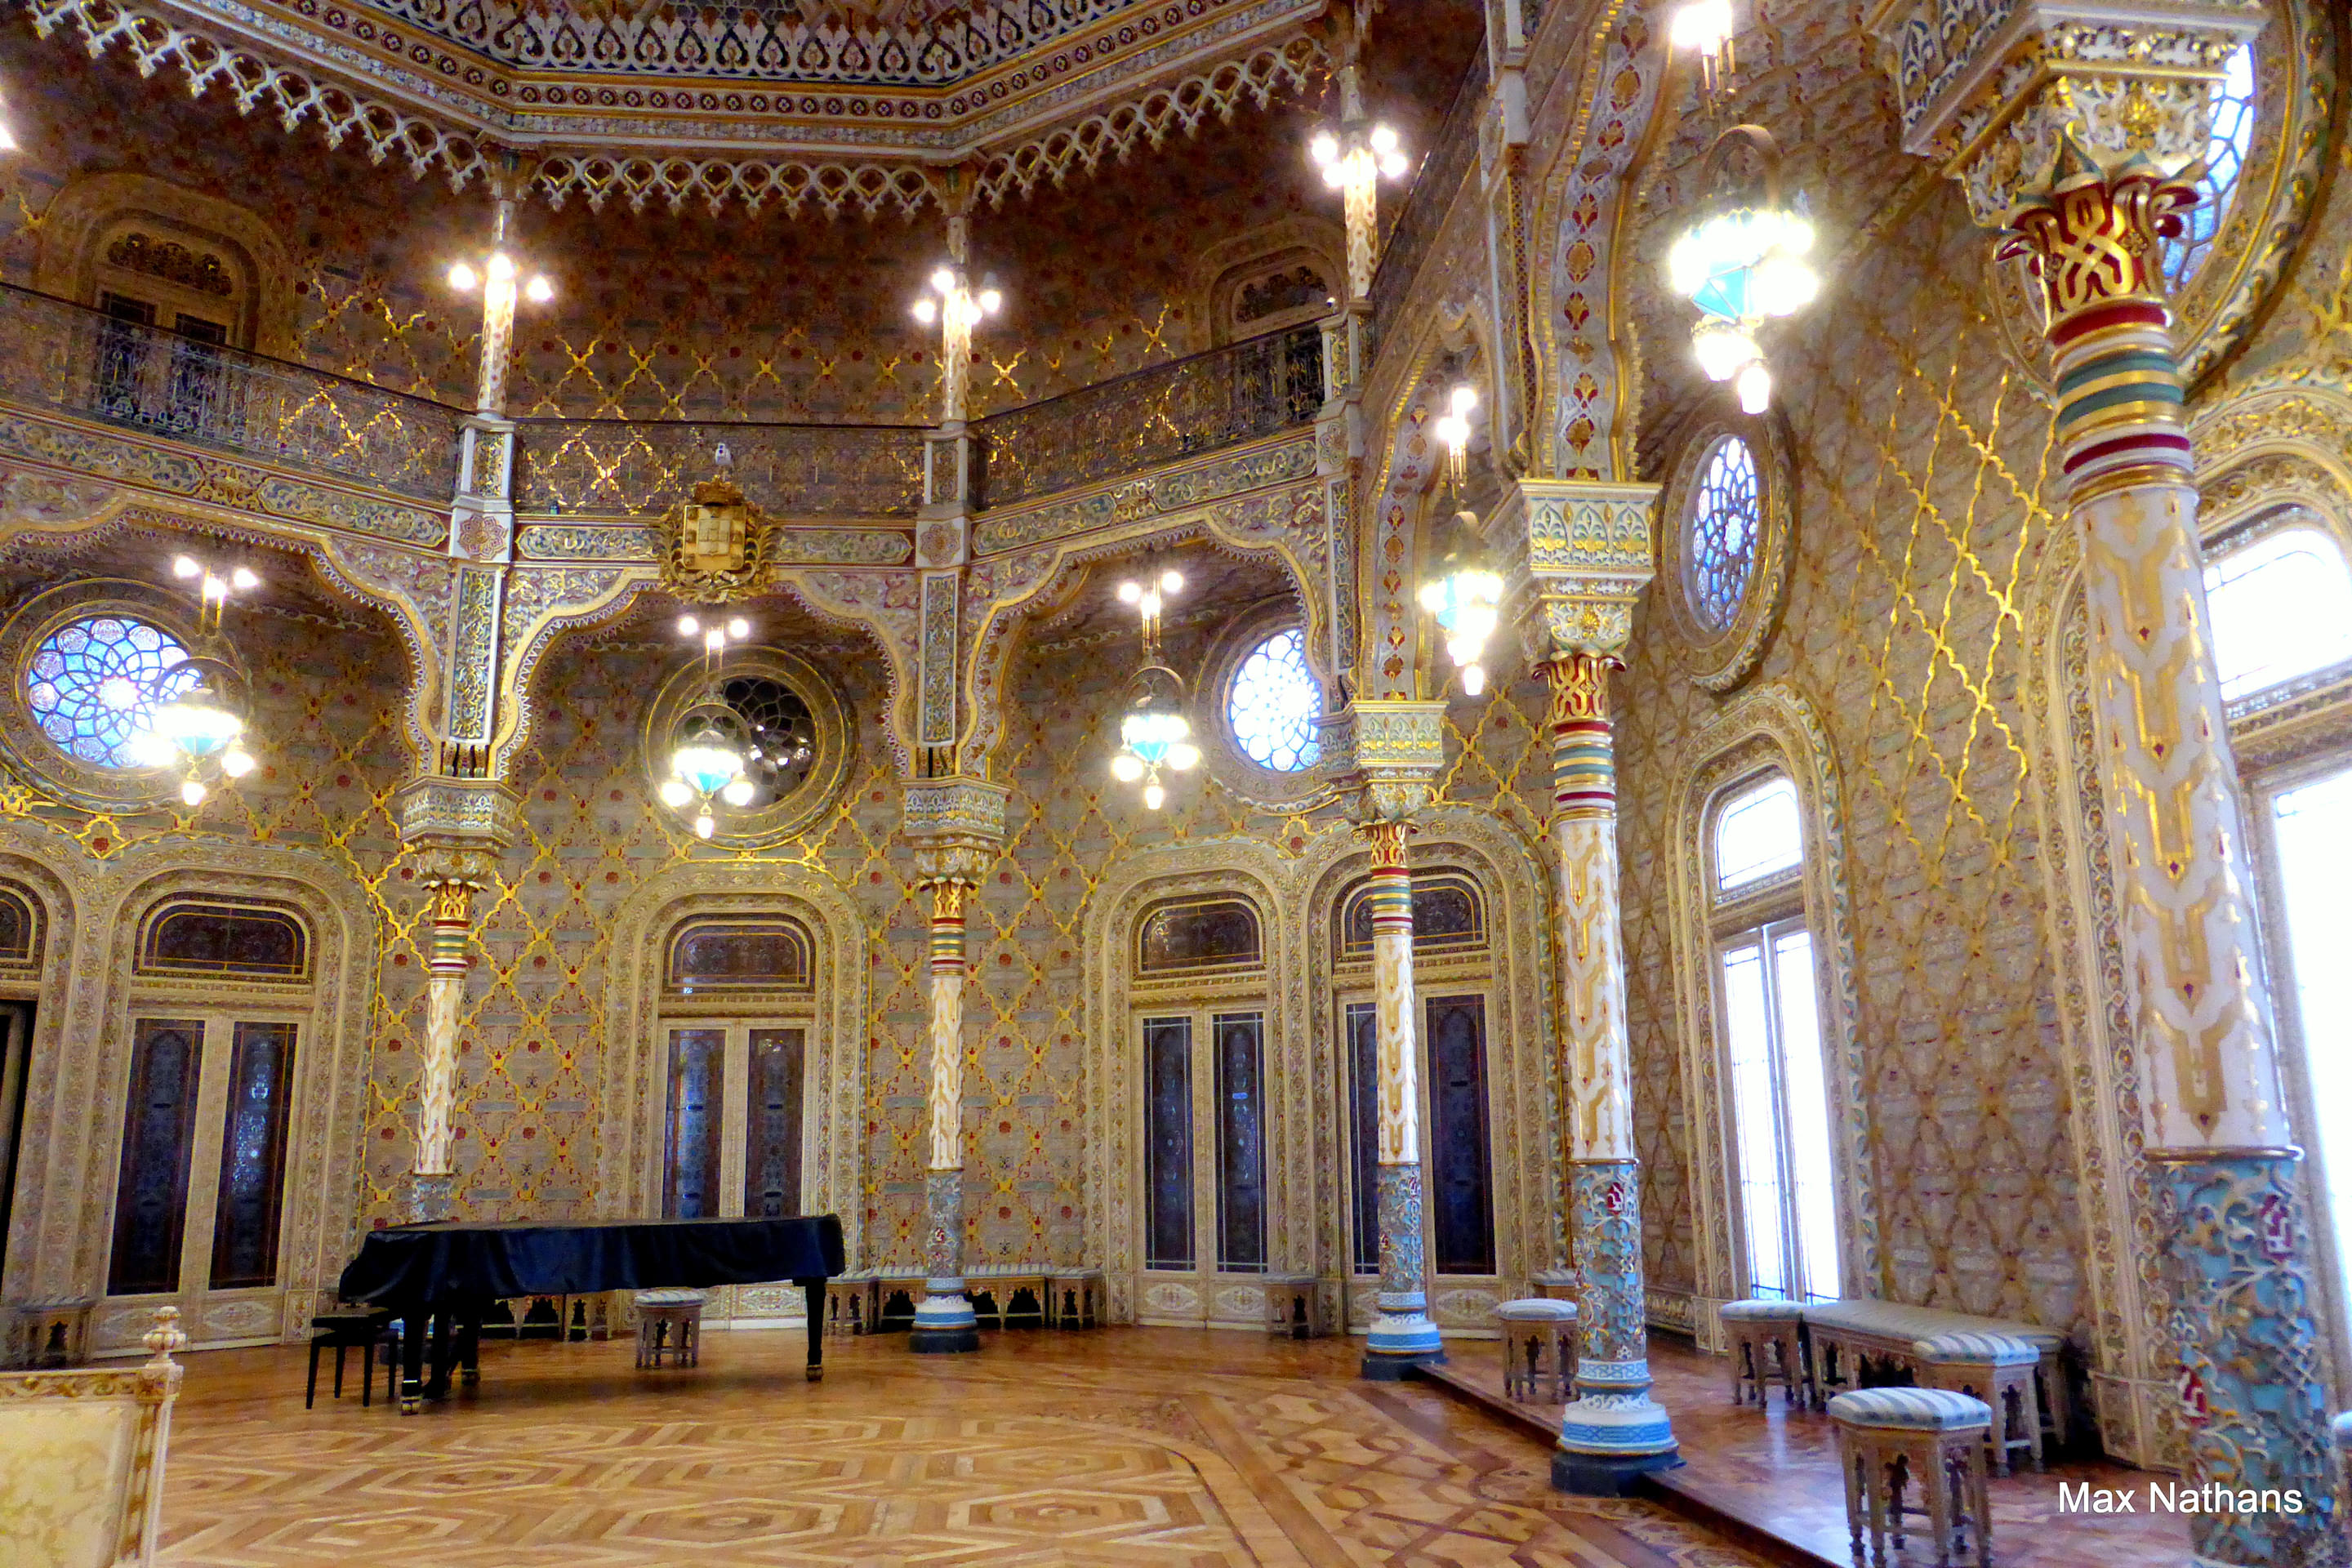 Bolsa Palace Overview